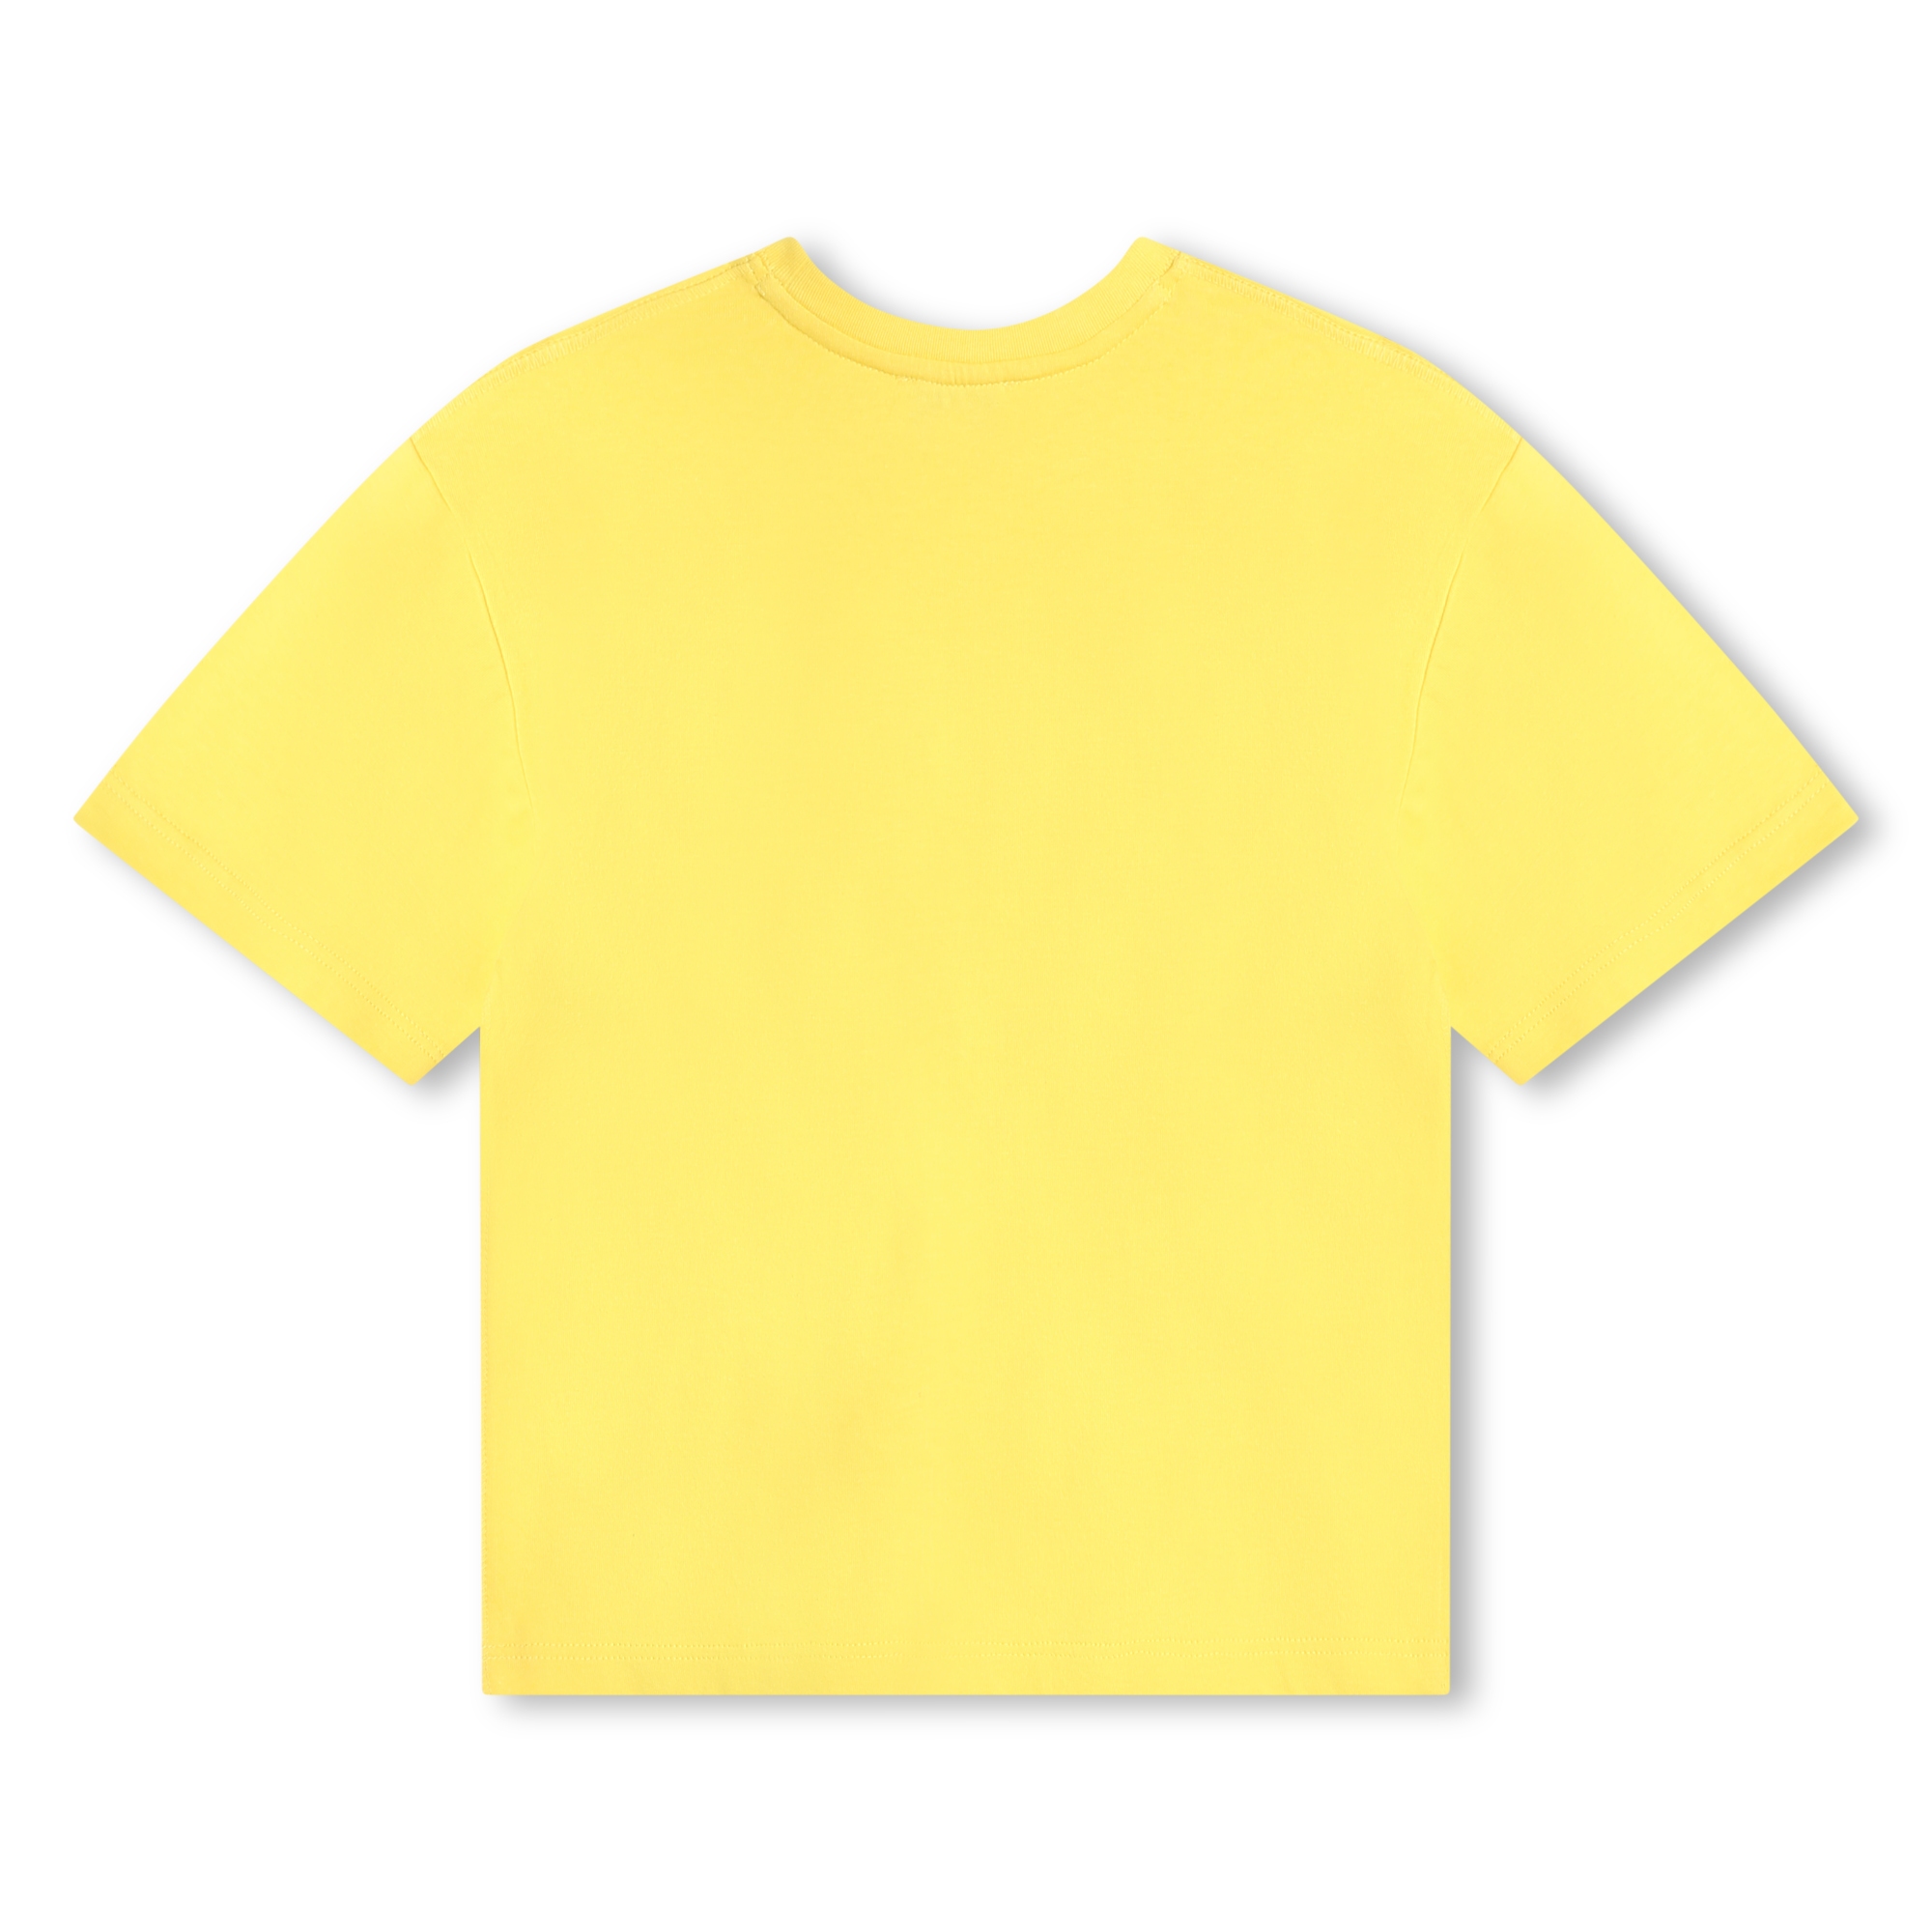 T-shirt maniche corte cotone MARC JACOBS Per RAGAZZO